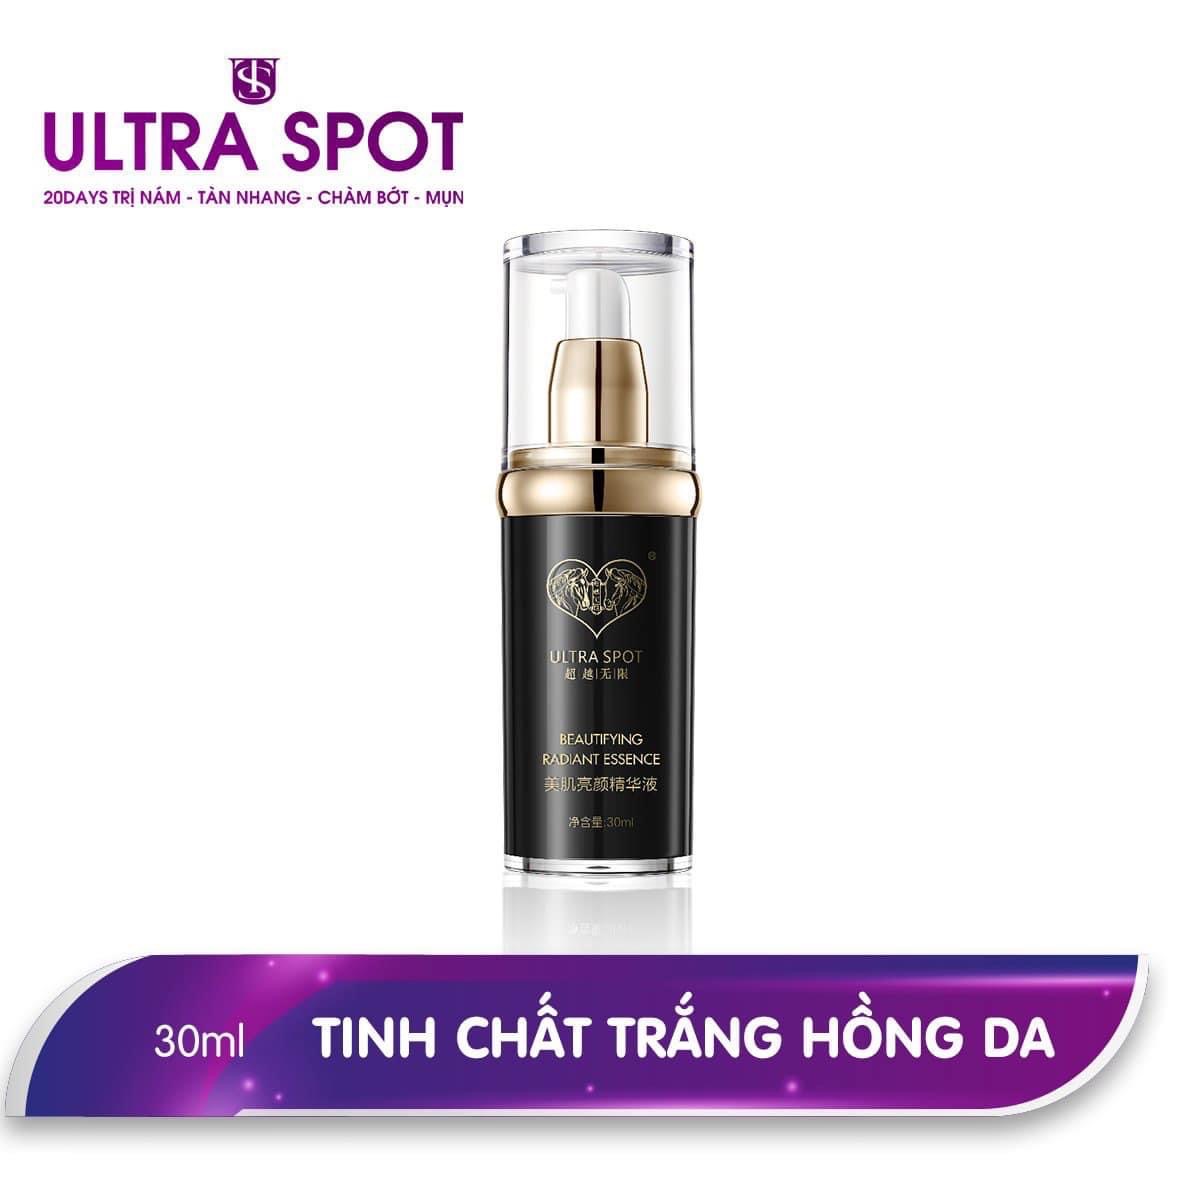 ULTRA SPOT Beautifying Radiant Essence – Tinh chất trắng hồng da ULTRA SPOT vỗ nhẹ trên da sau khi làm sạch. Tốt nhất nên sử dụng ngày 2 lần trước các sản phẩm đặc trị để đạt hiệu quả tốt nhất